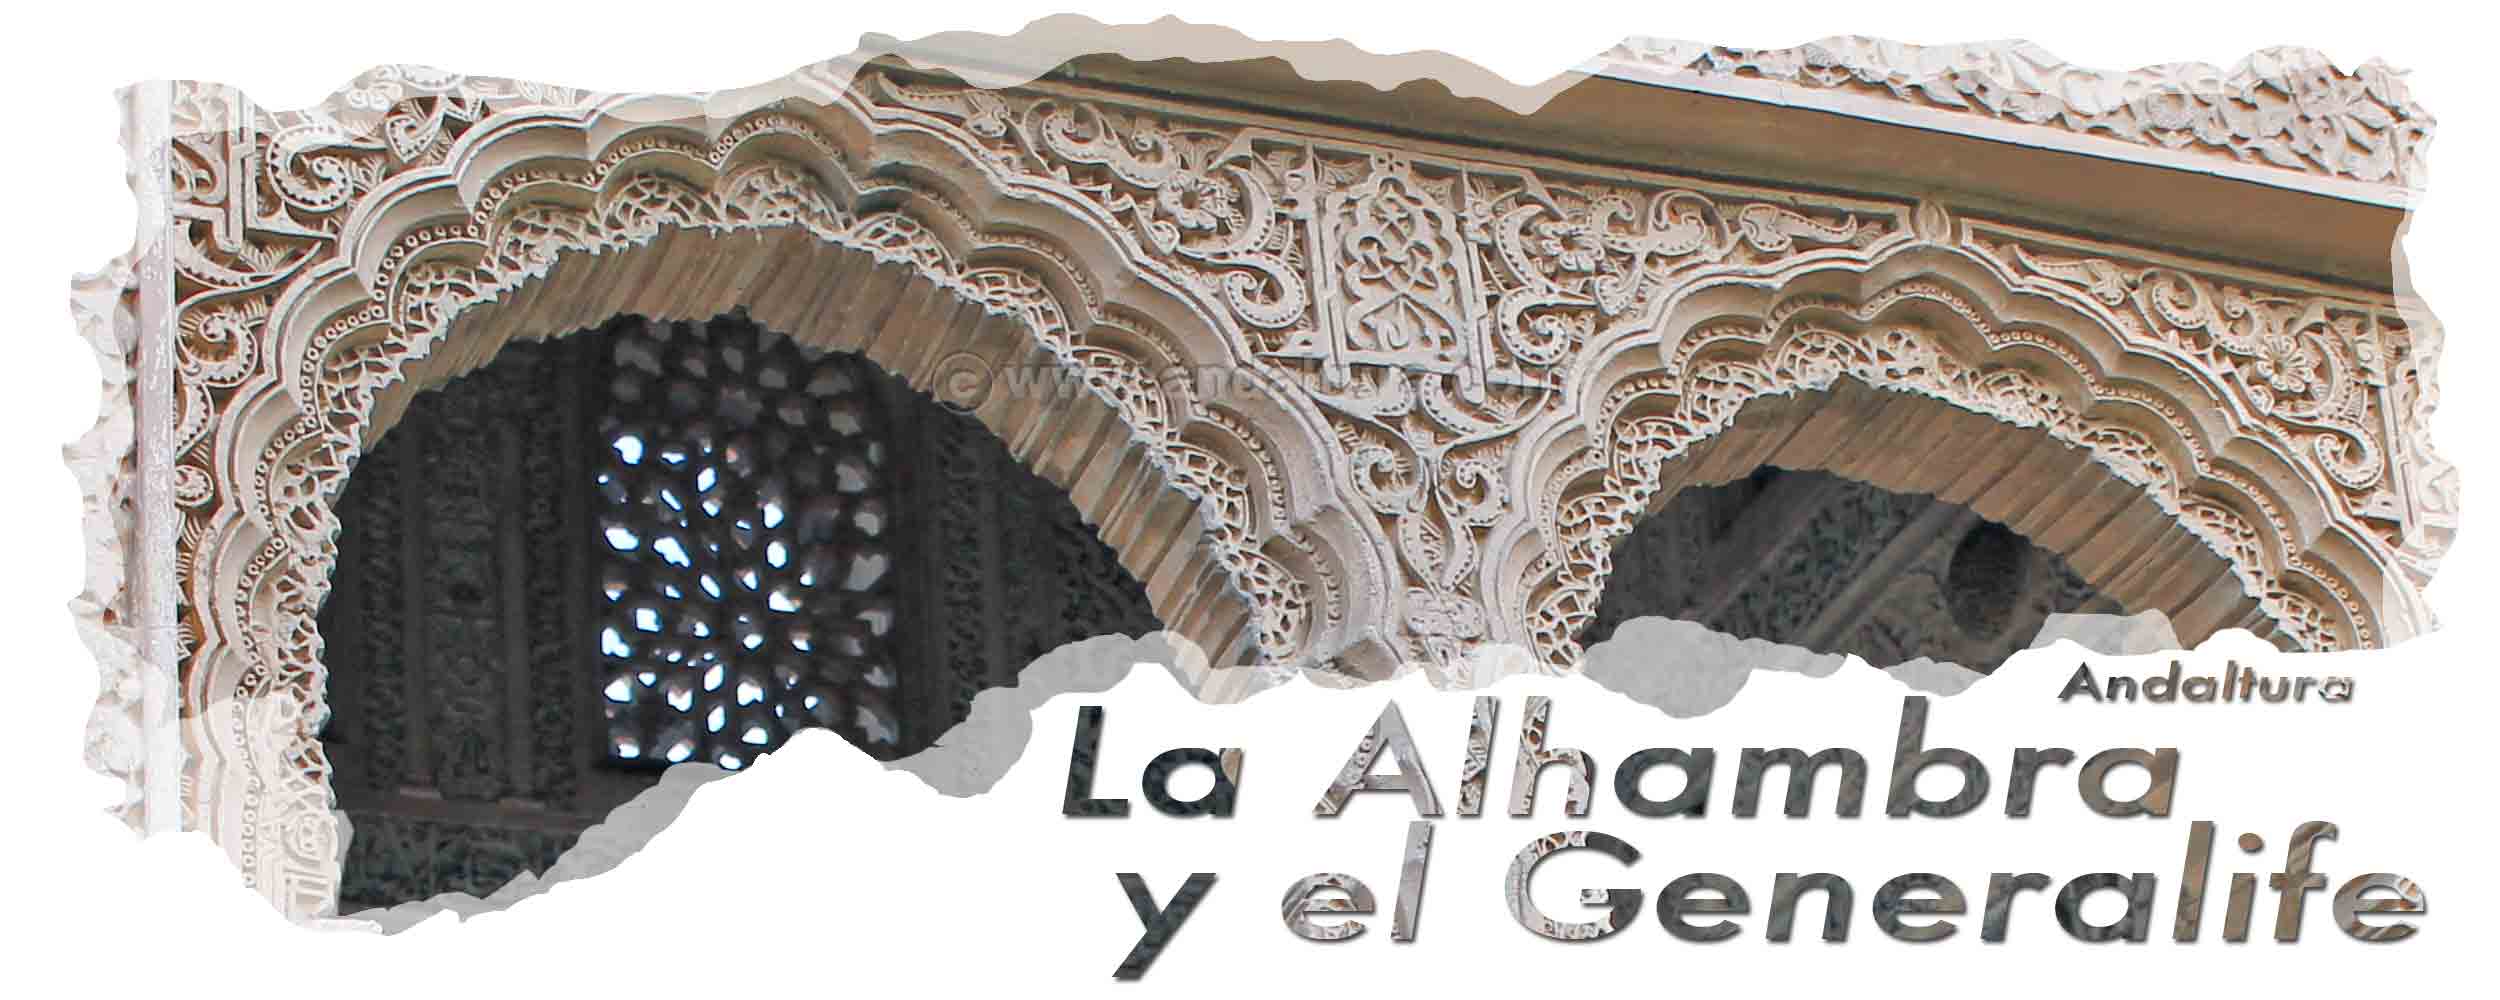 Cabecera de la Torre de las Armas - Ventanas e interior decorada con yeserías en el Oratorio del Partal de la Alhambra